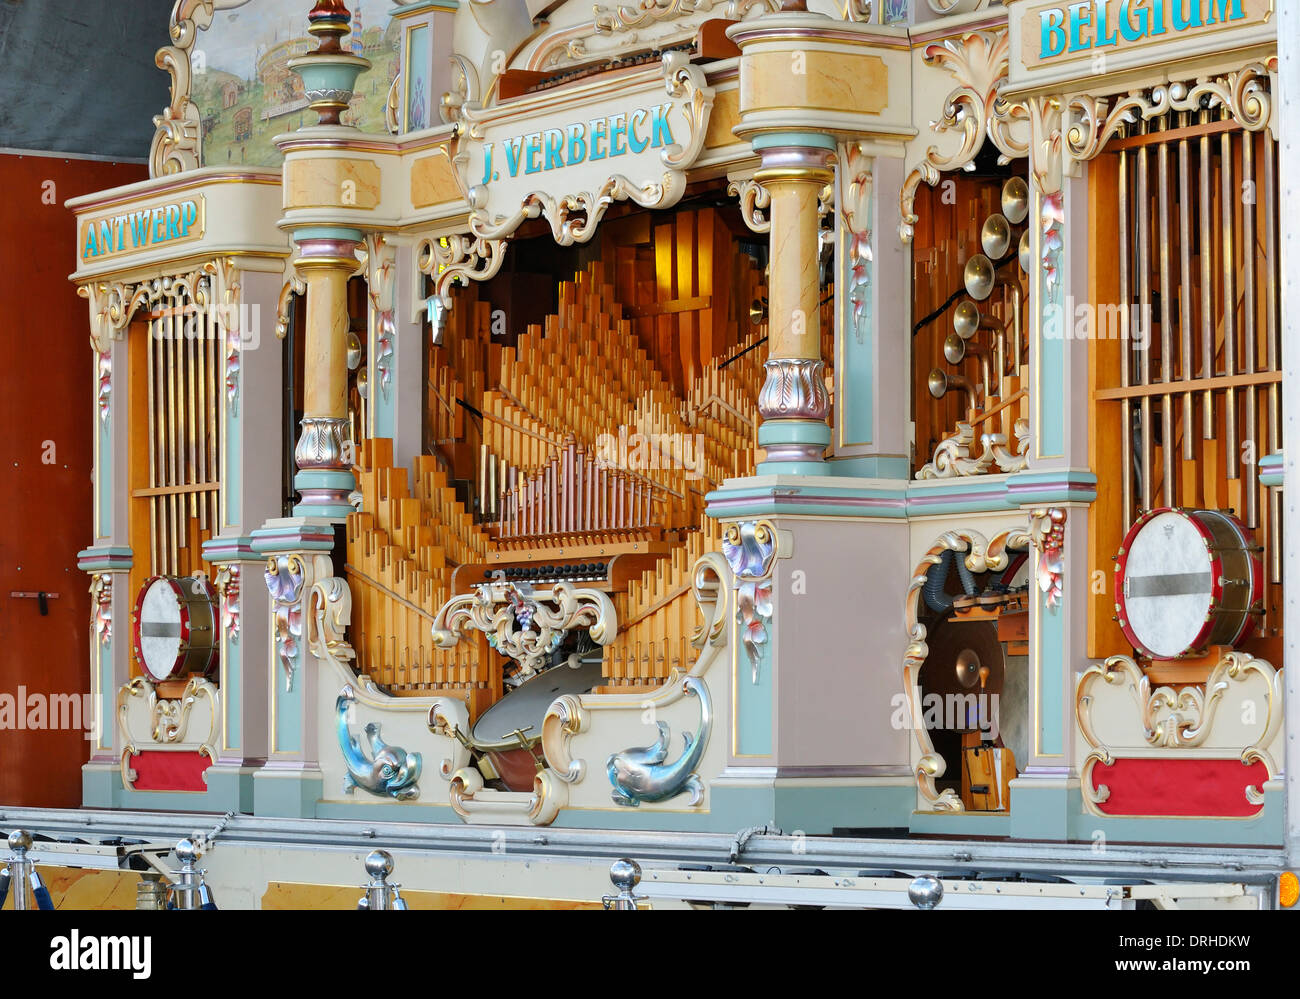 Victoire de foire orgue, J.Verbeeck, Anvers, Belgique Banque D'Images